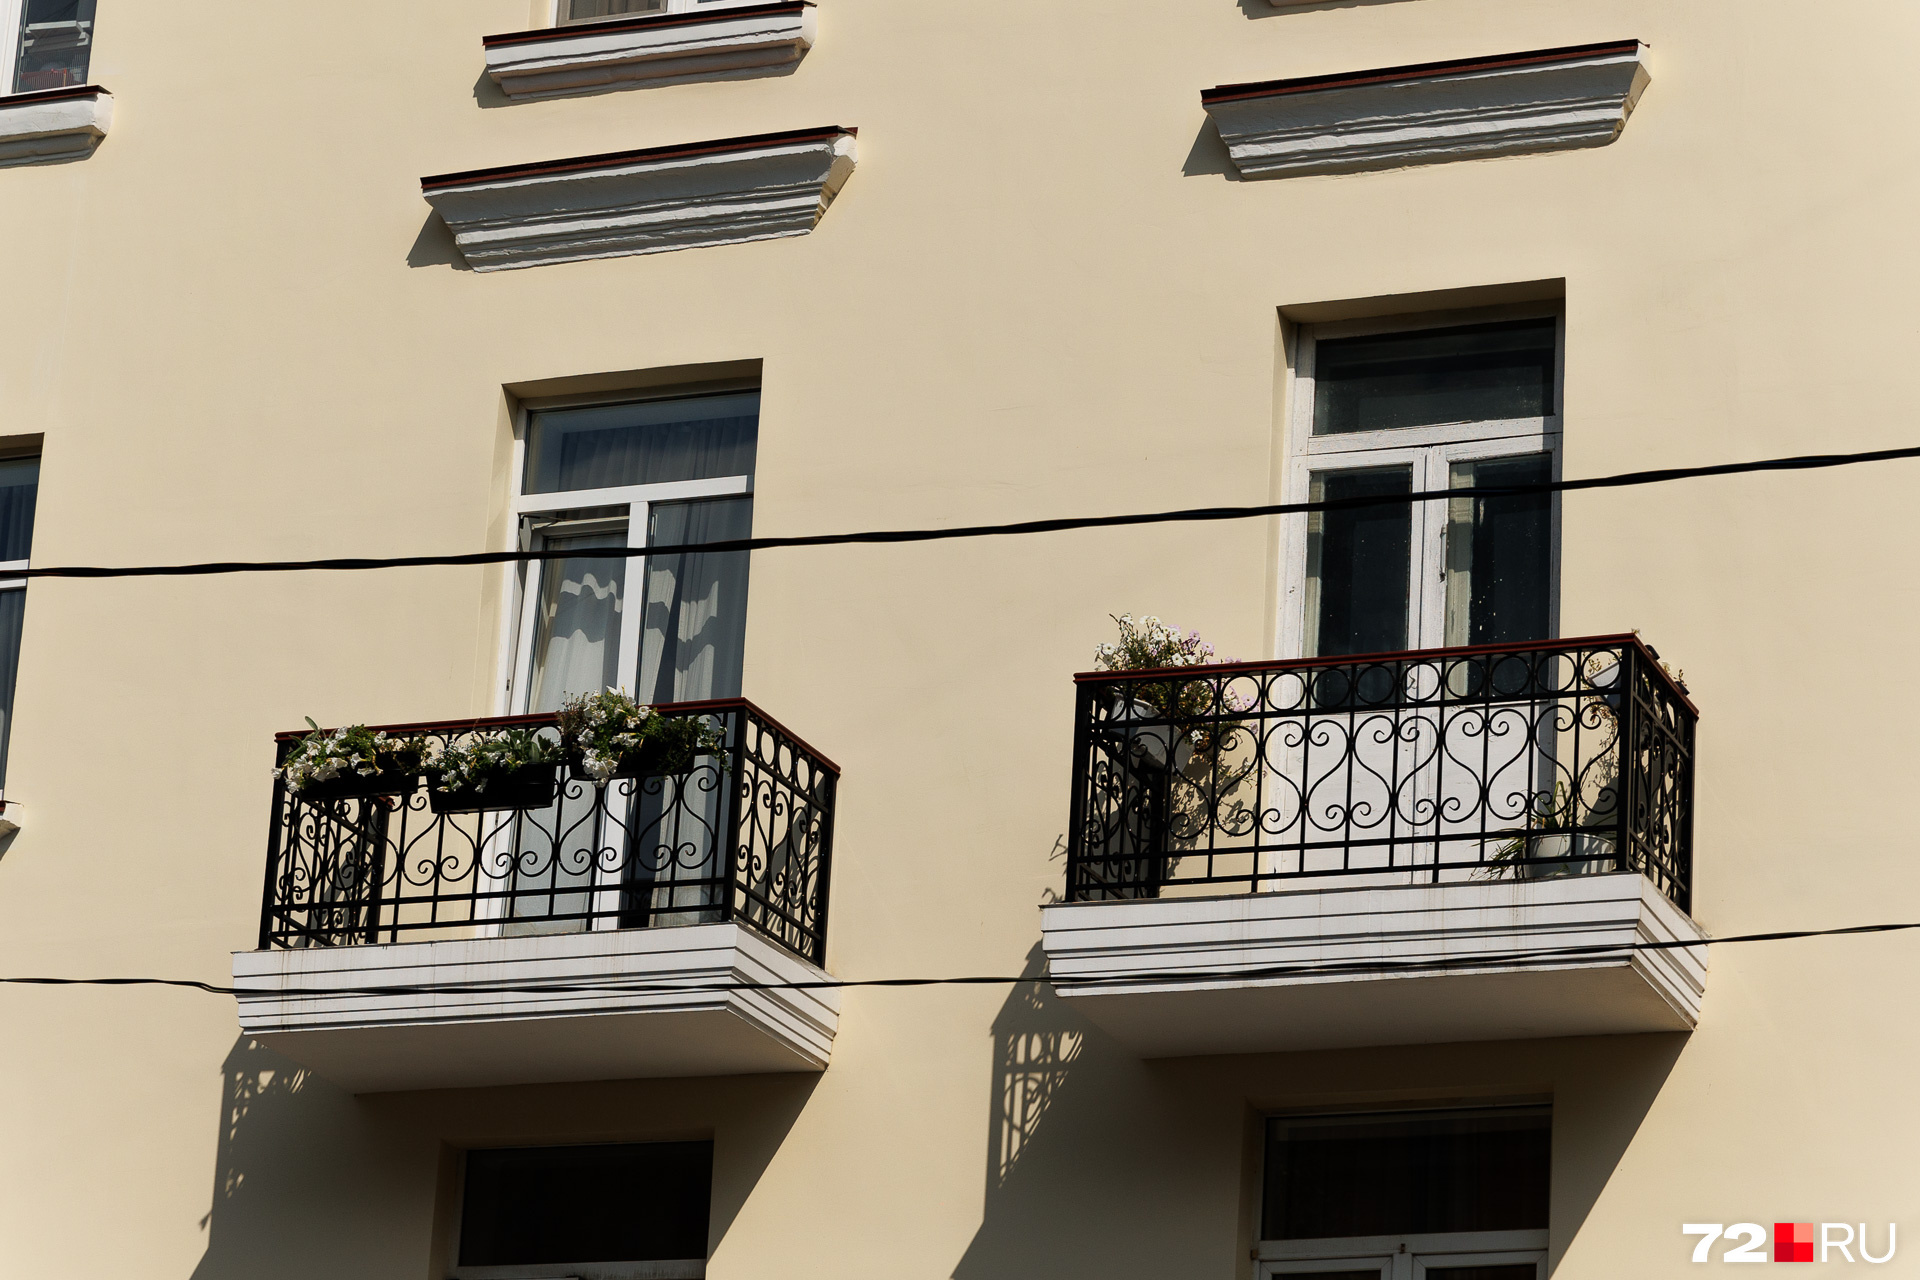 Красота в простоте — это, например, про убранство маленьких балкончиков в одной из тюменских сталинок. Посмотрите, как уютно